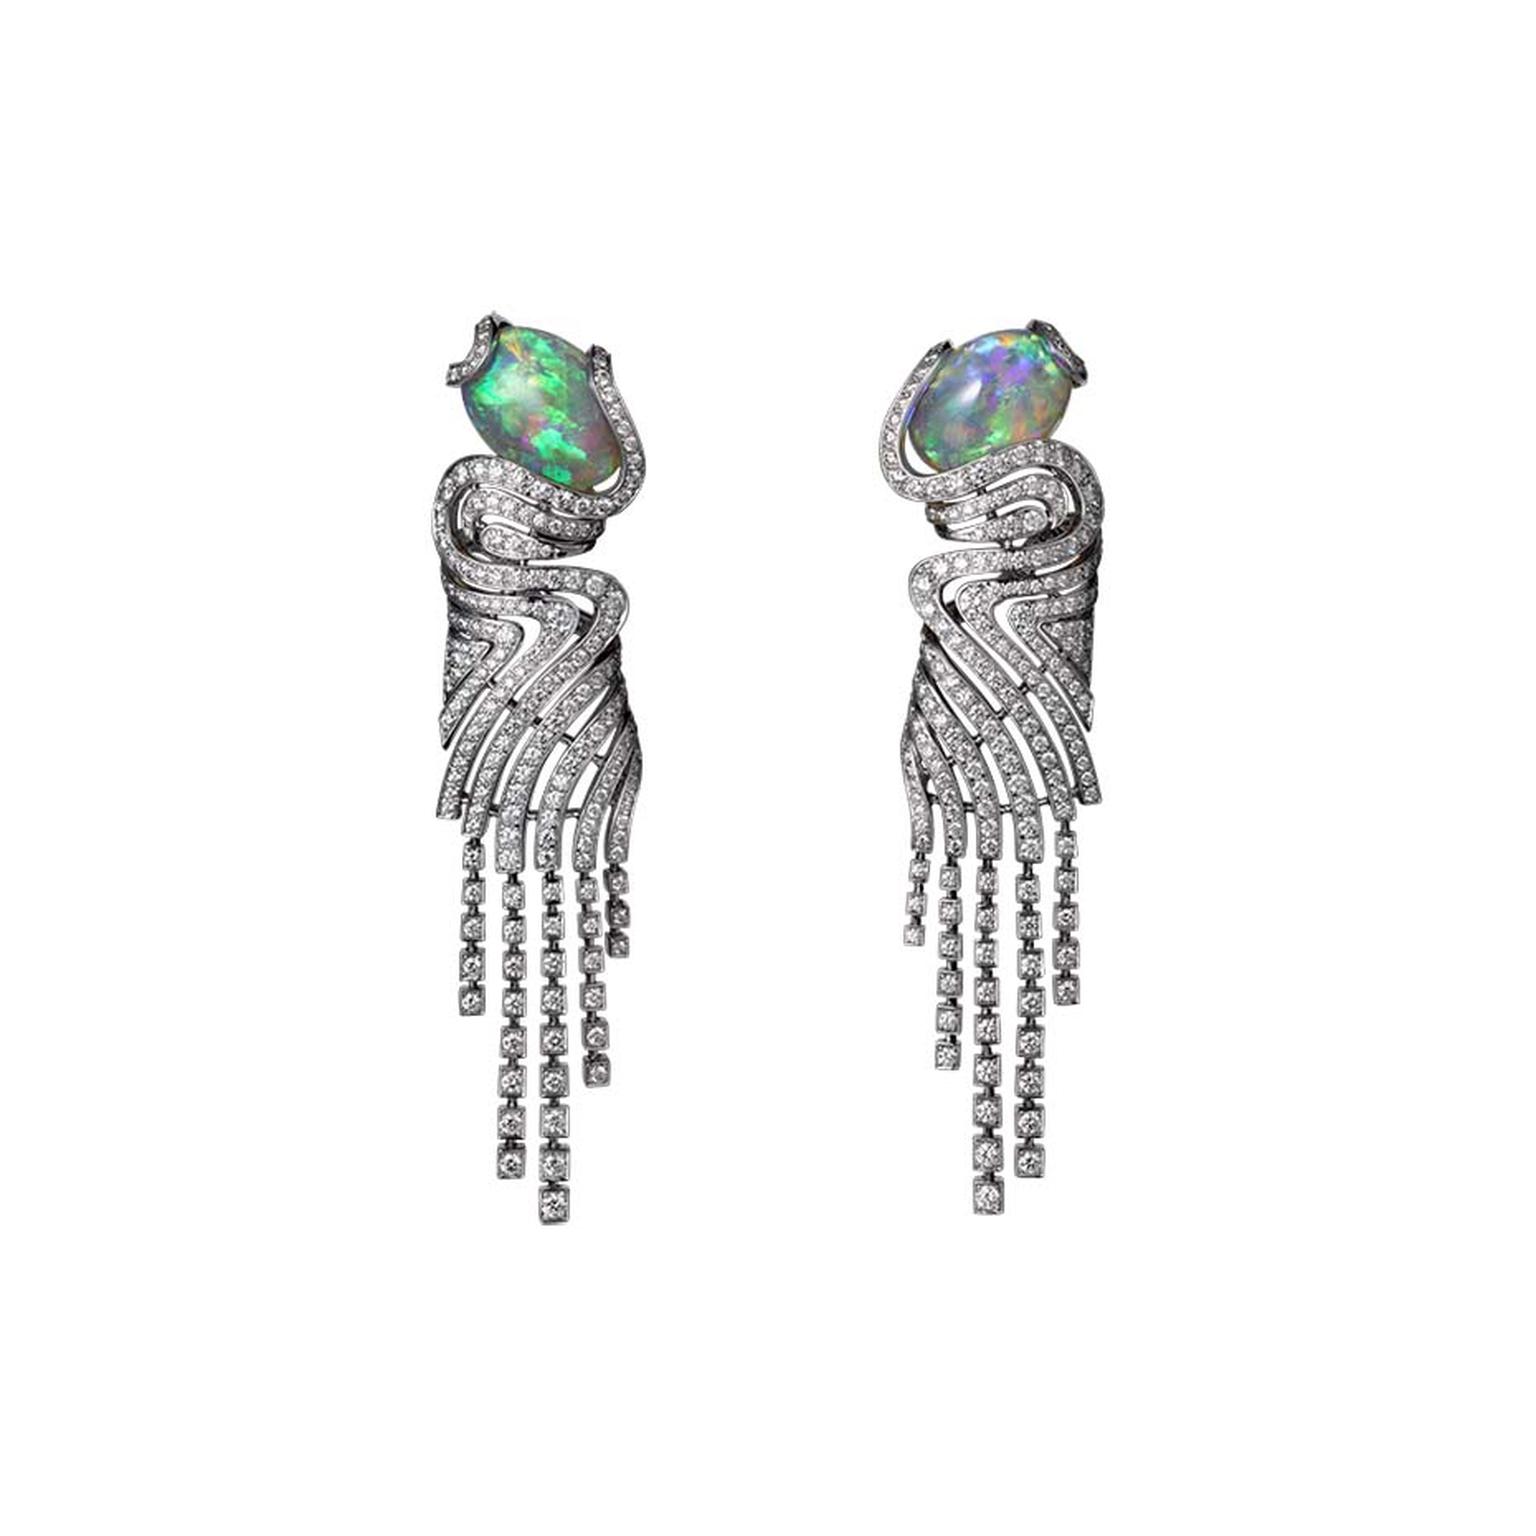 Jewellery earrings in platinum 